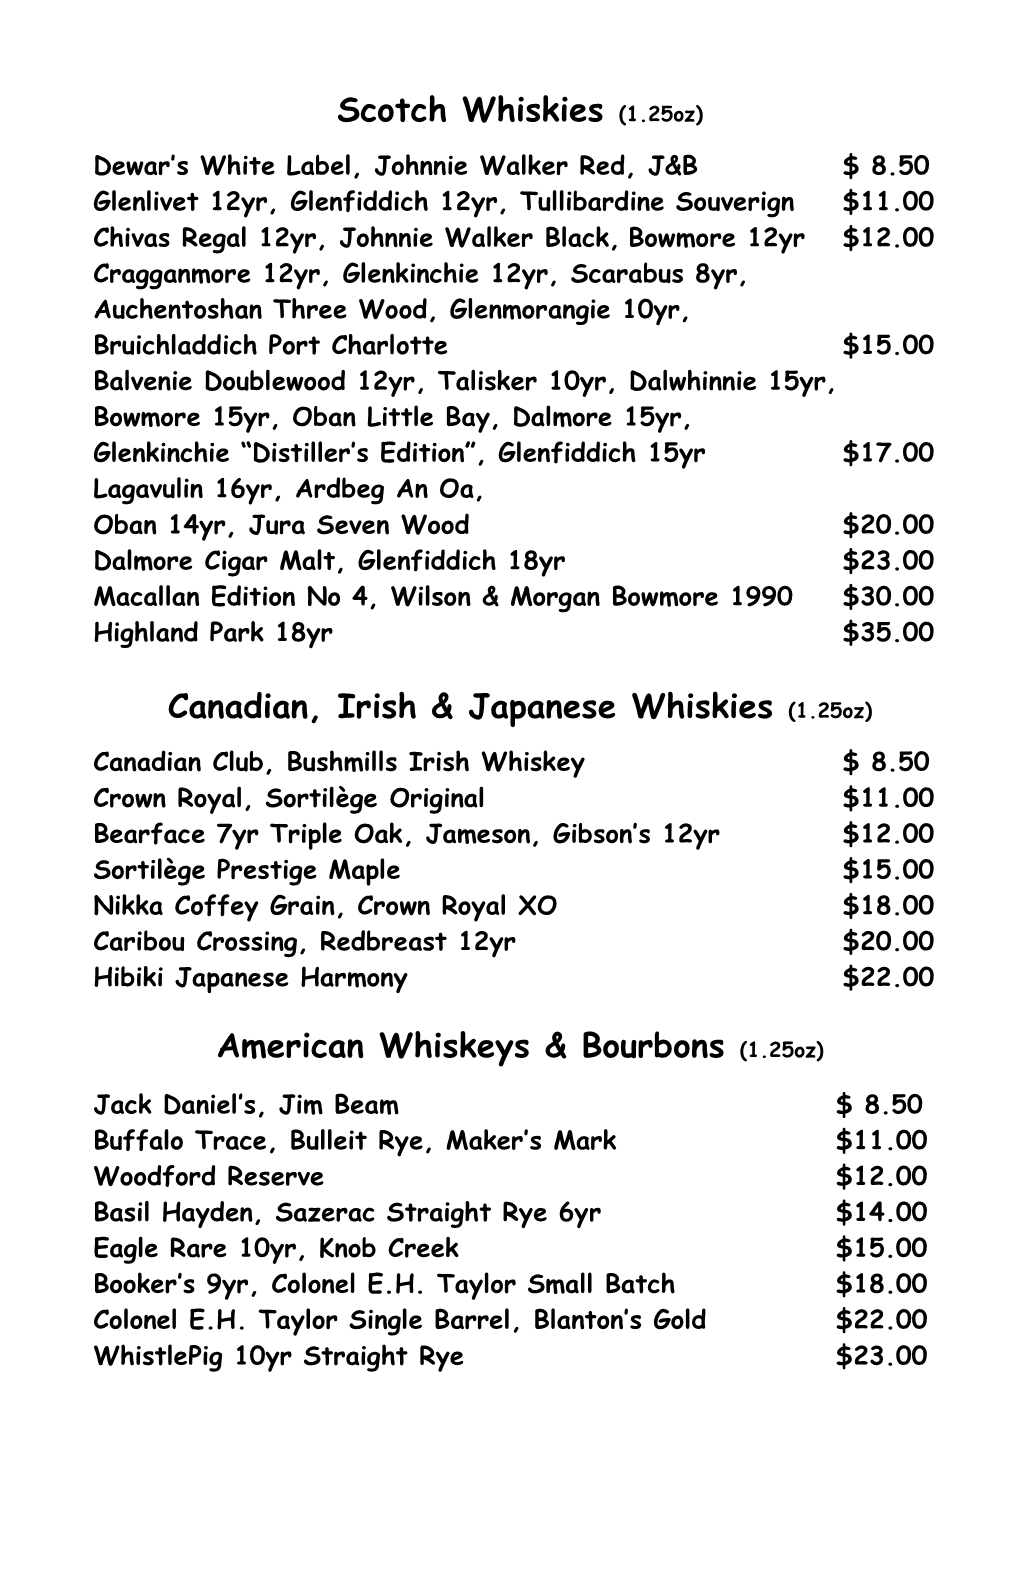 Scotch Whiskies (1.25Oz) Canadian, Irish & Japanese Whiskies (1.25Oz